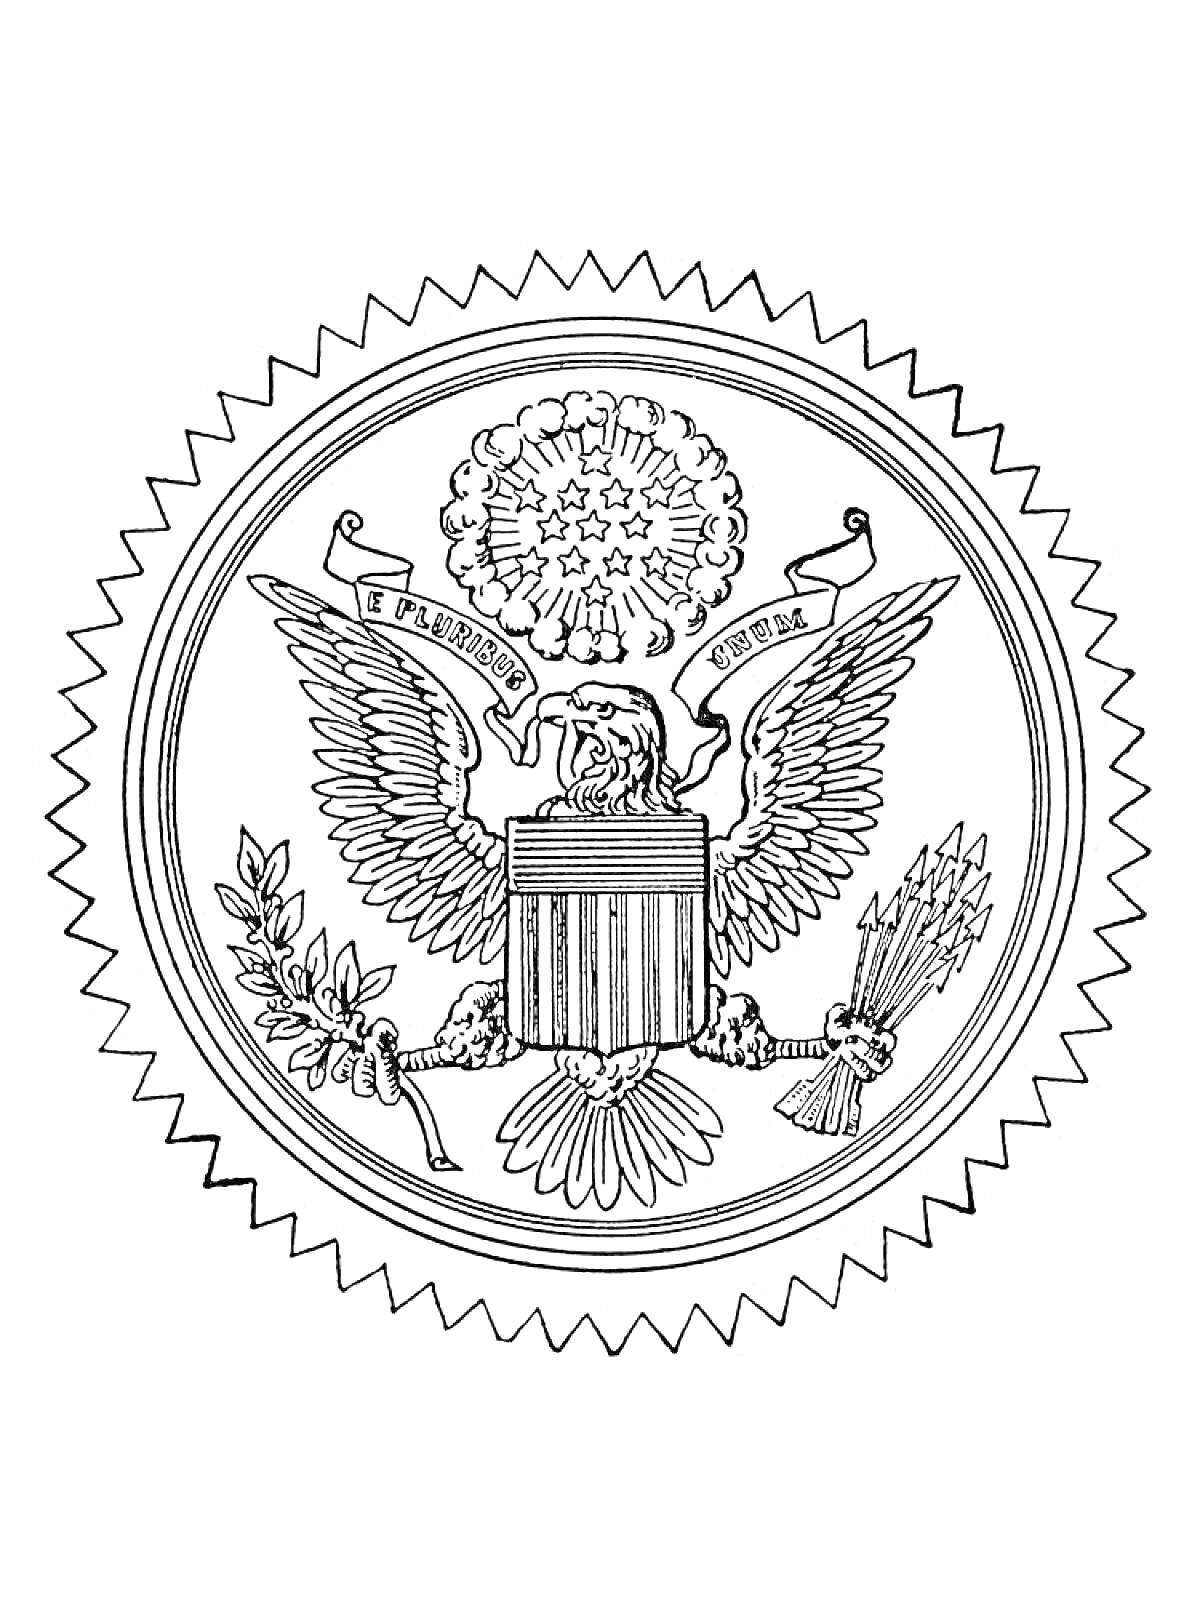 Герб с орлом, щитом, оливковой ветвью, стрелами и лентой с надписью 